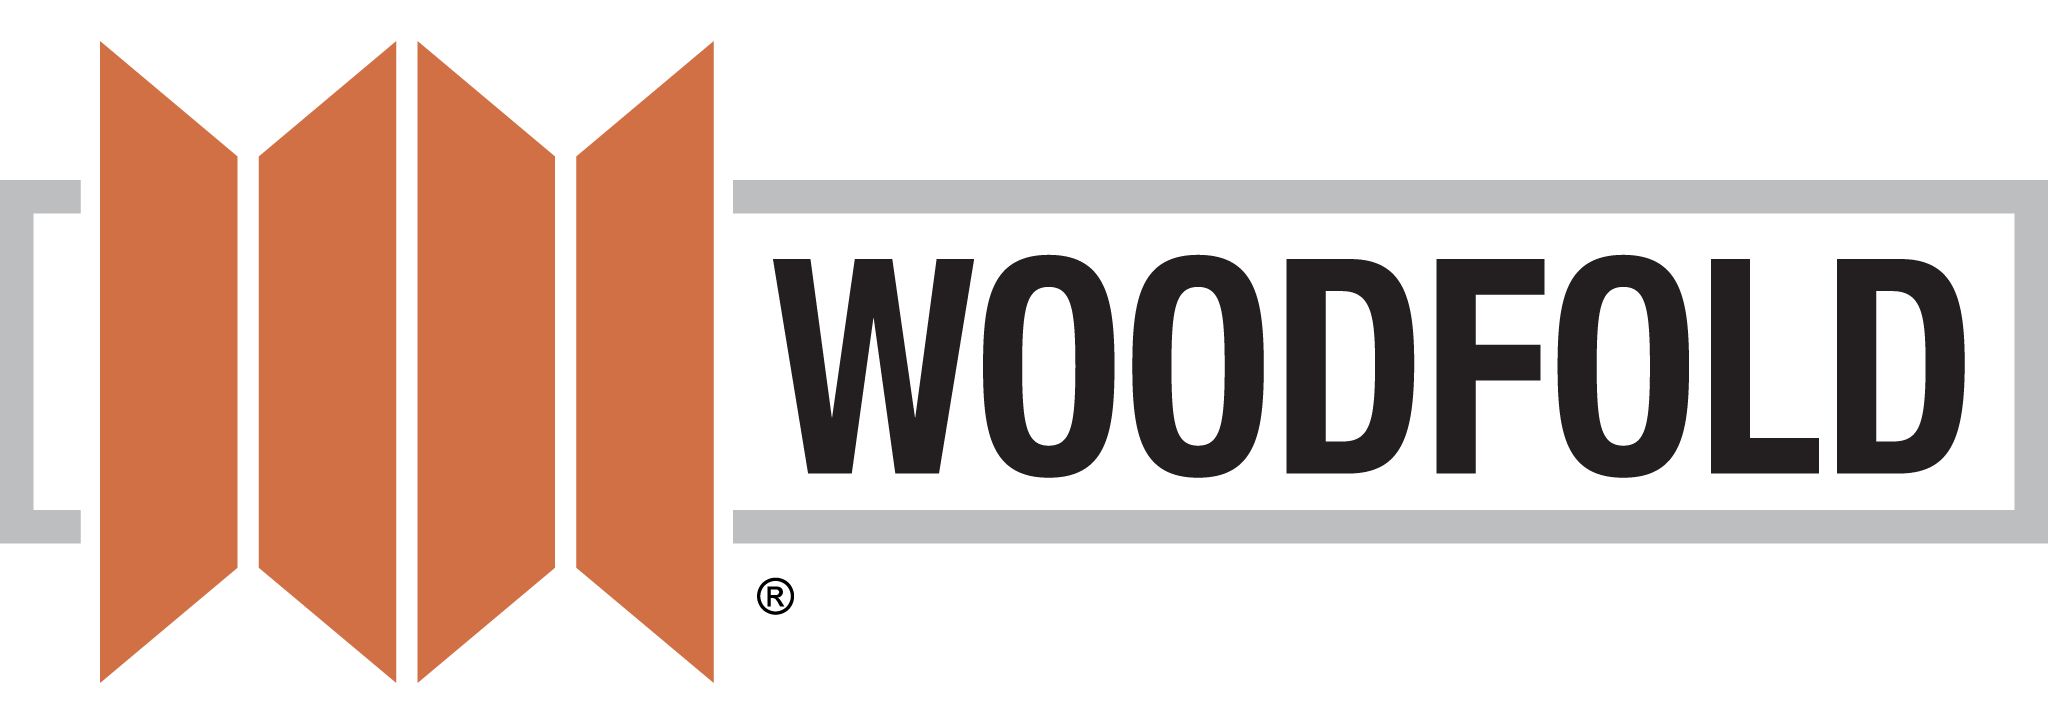 Woodfold